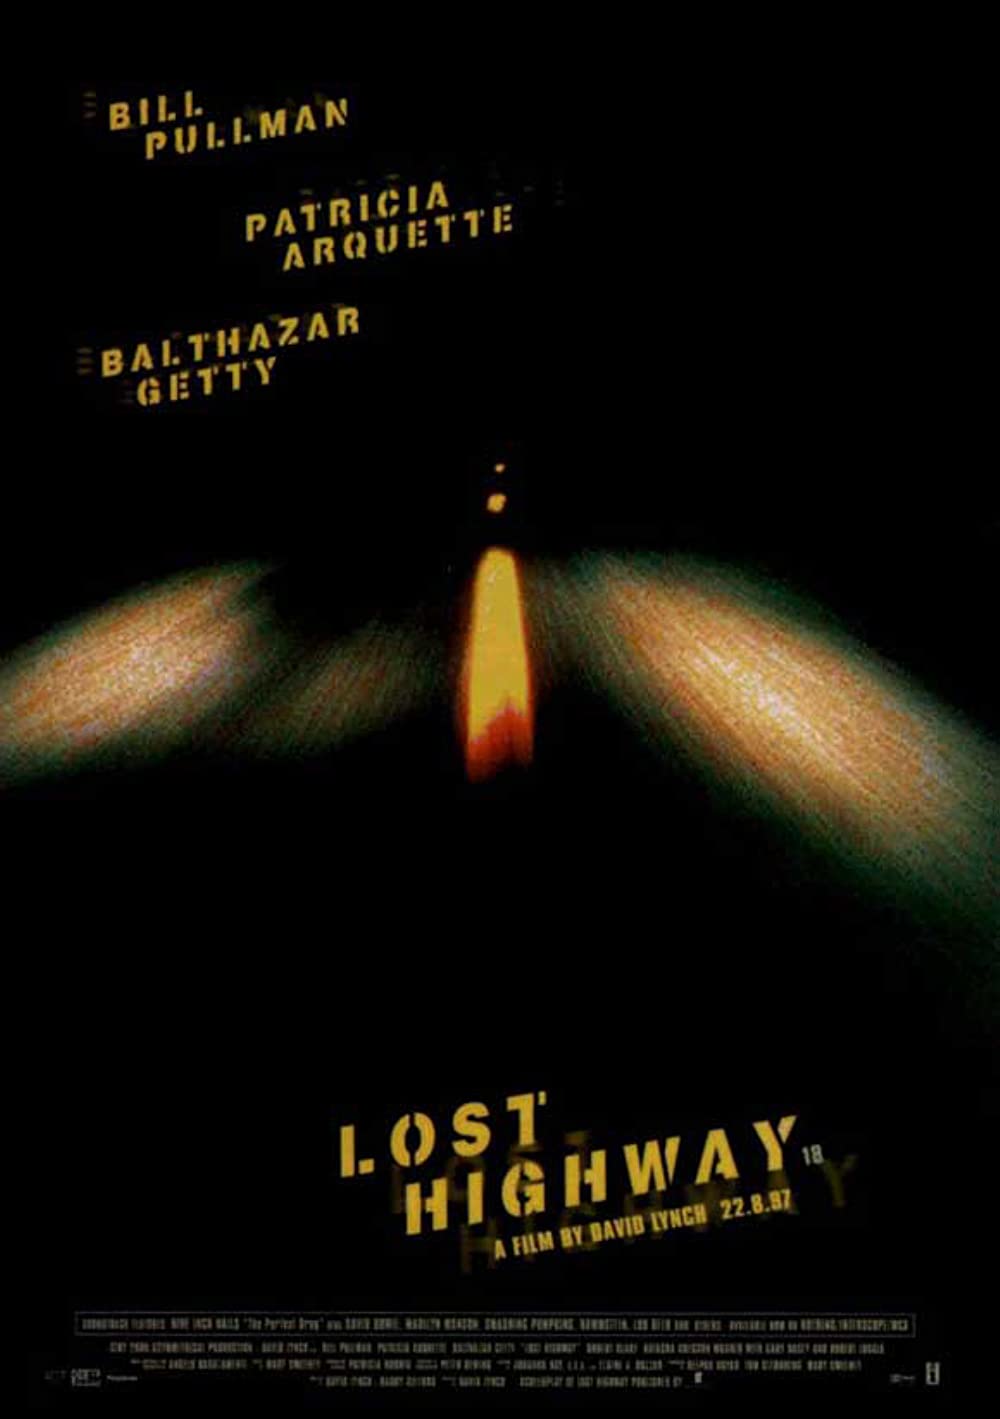 Filmbeschreibung zu Lost Highway (OV)